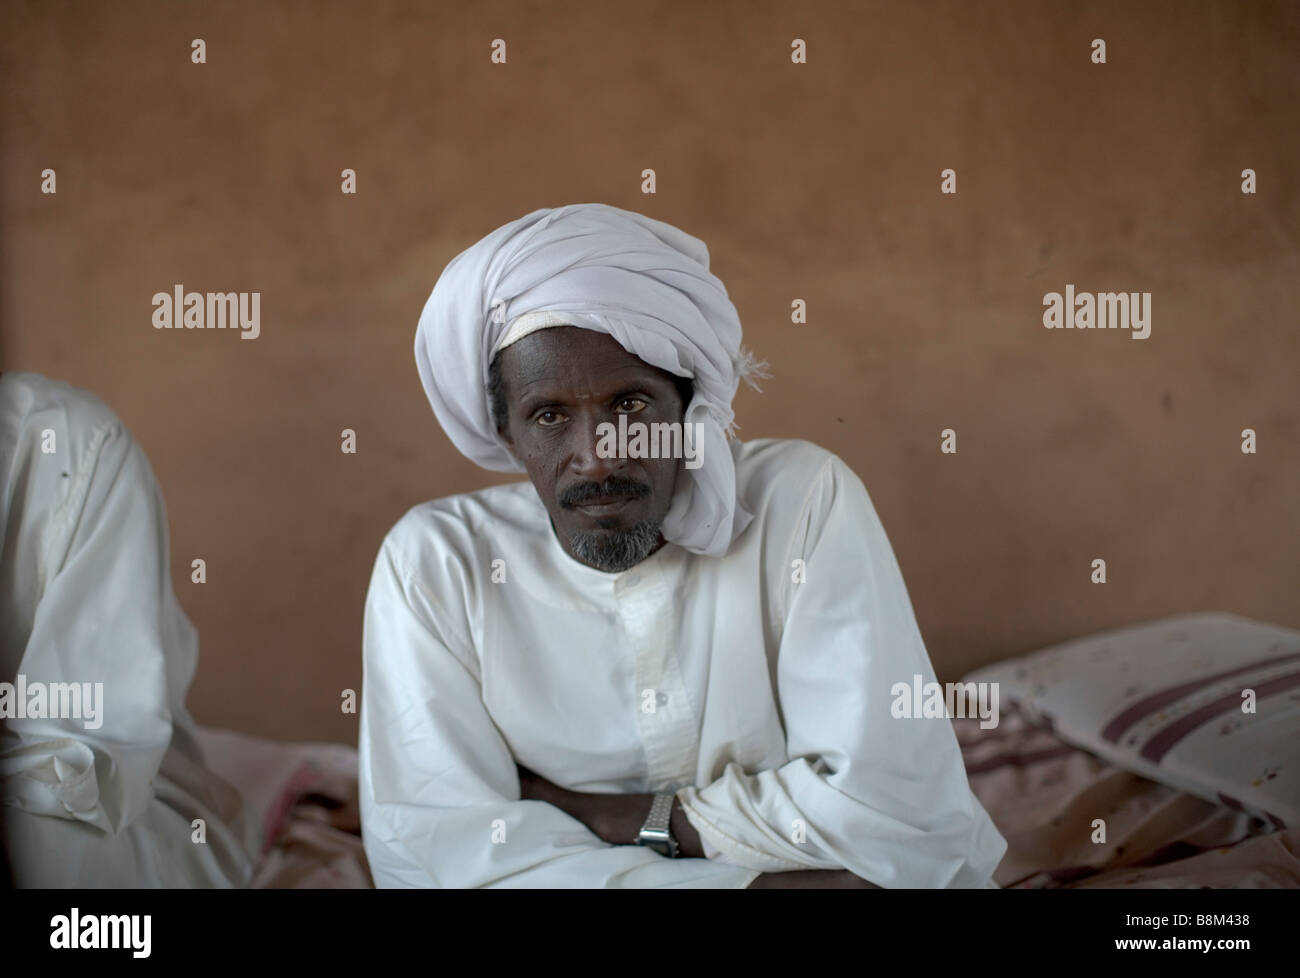 Portrait de l'homme arabe. Shemkya catharact, 4e région du Nil Nubie Soudan Banque D'Images